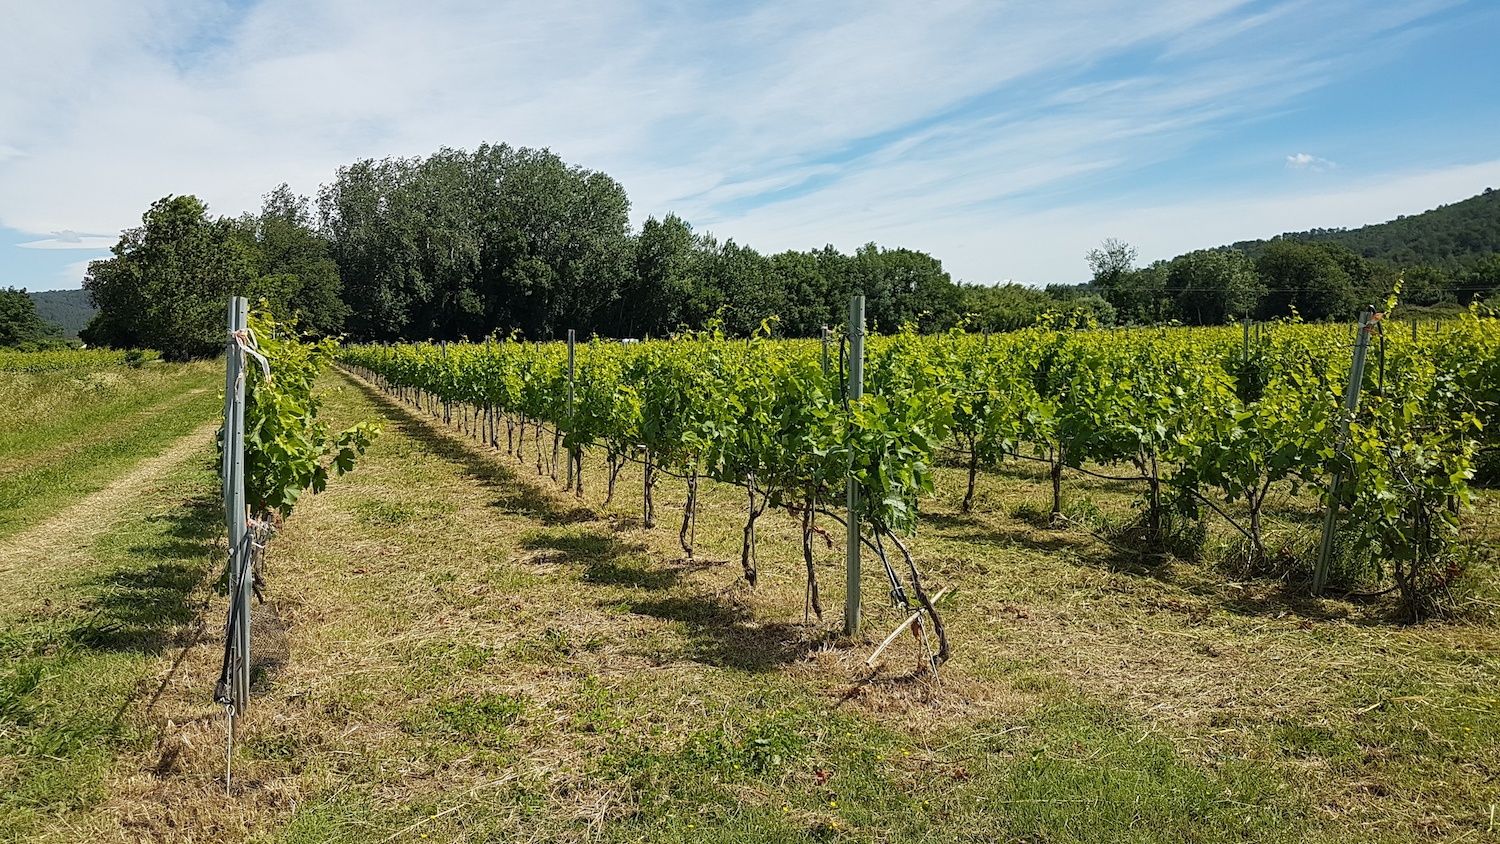 domaine-terre-du-real-producteur-huile-olive-aoc-vin-bio-vallee-sauvebonne-hyeres-paysage-vigne